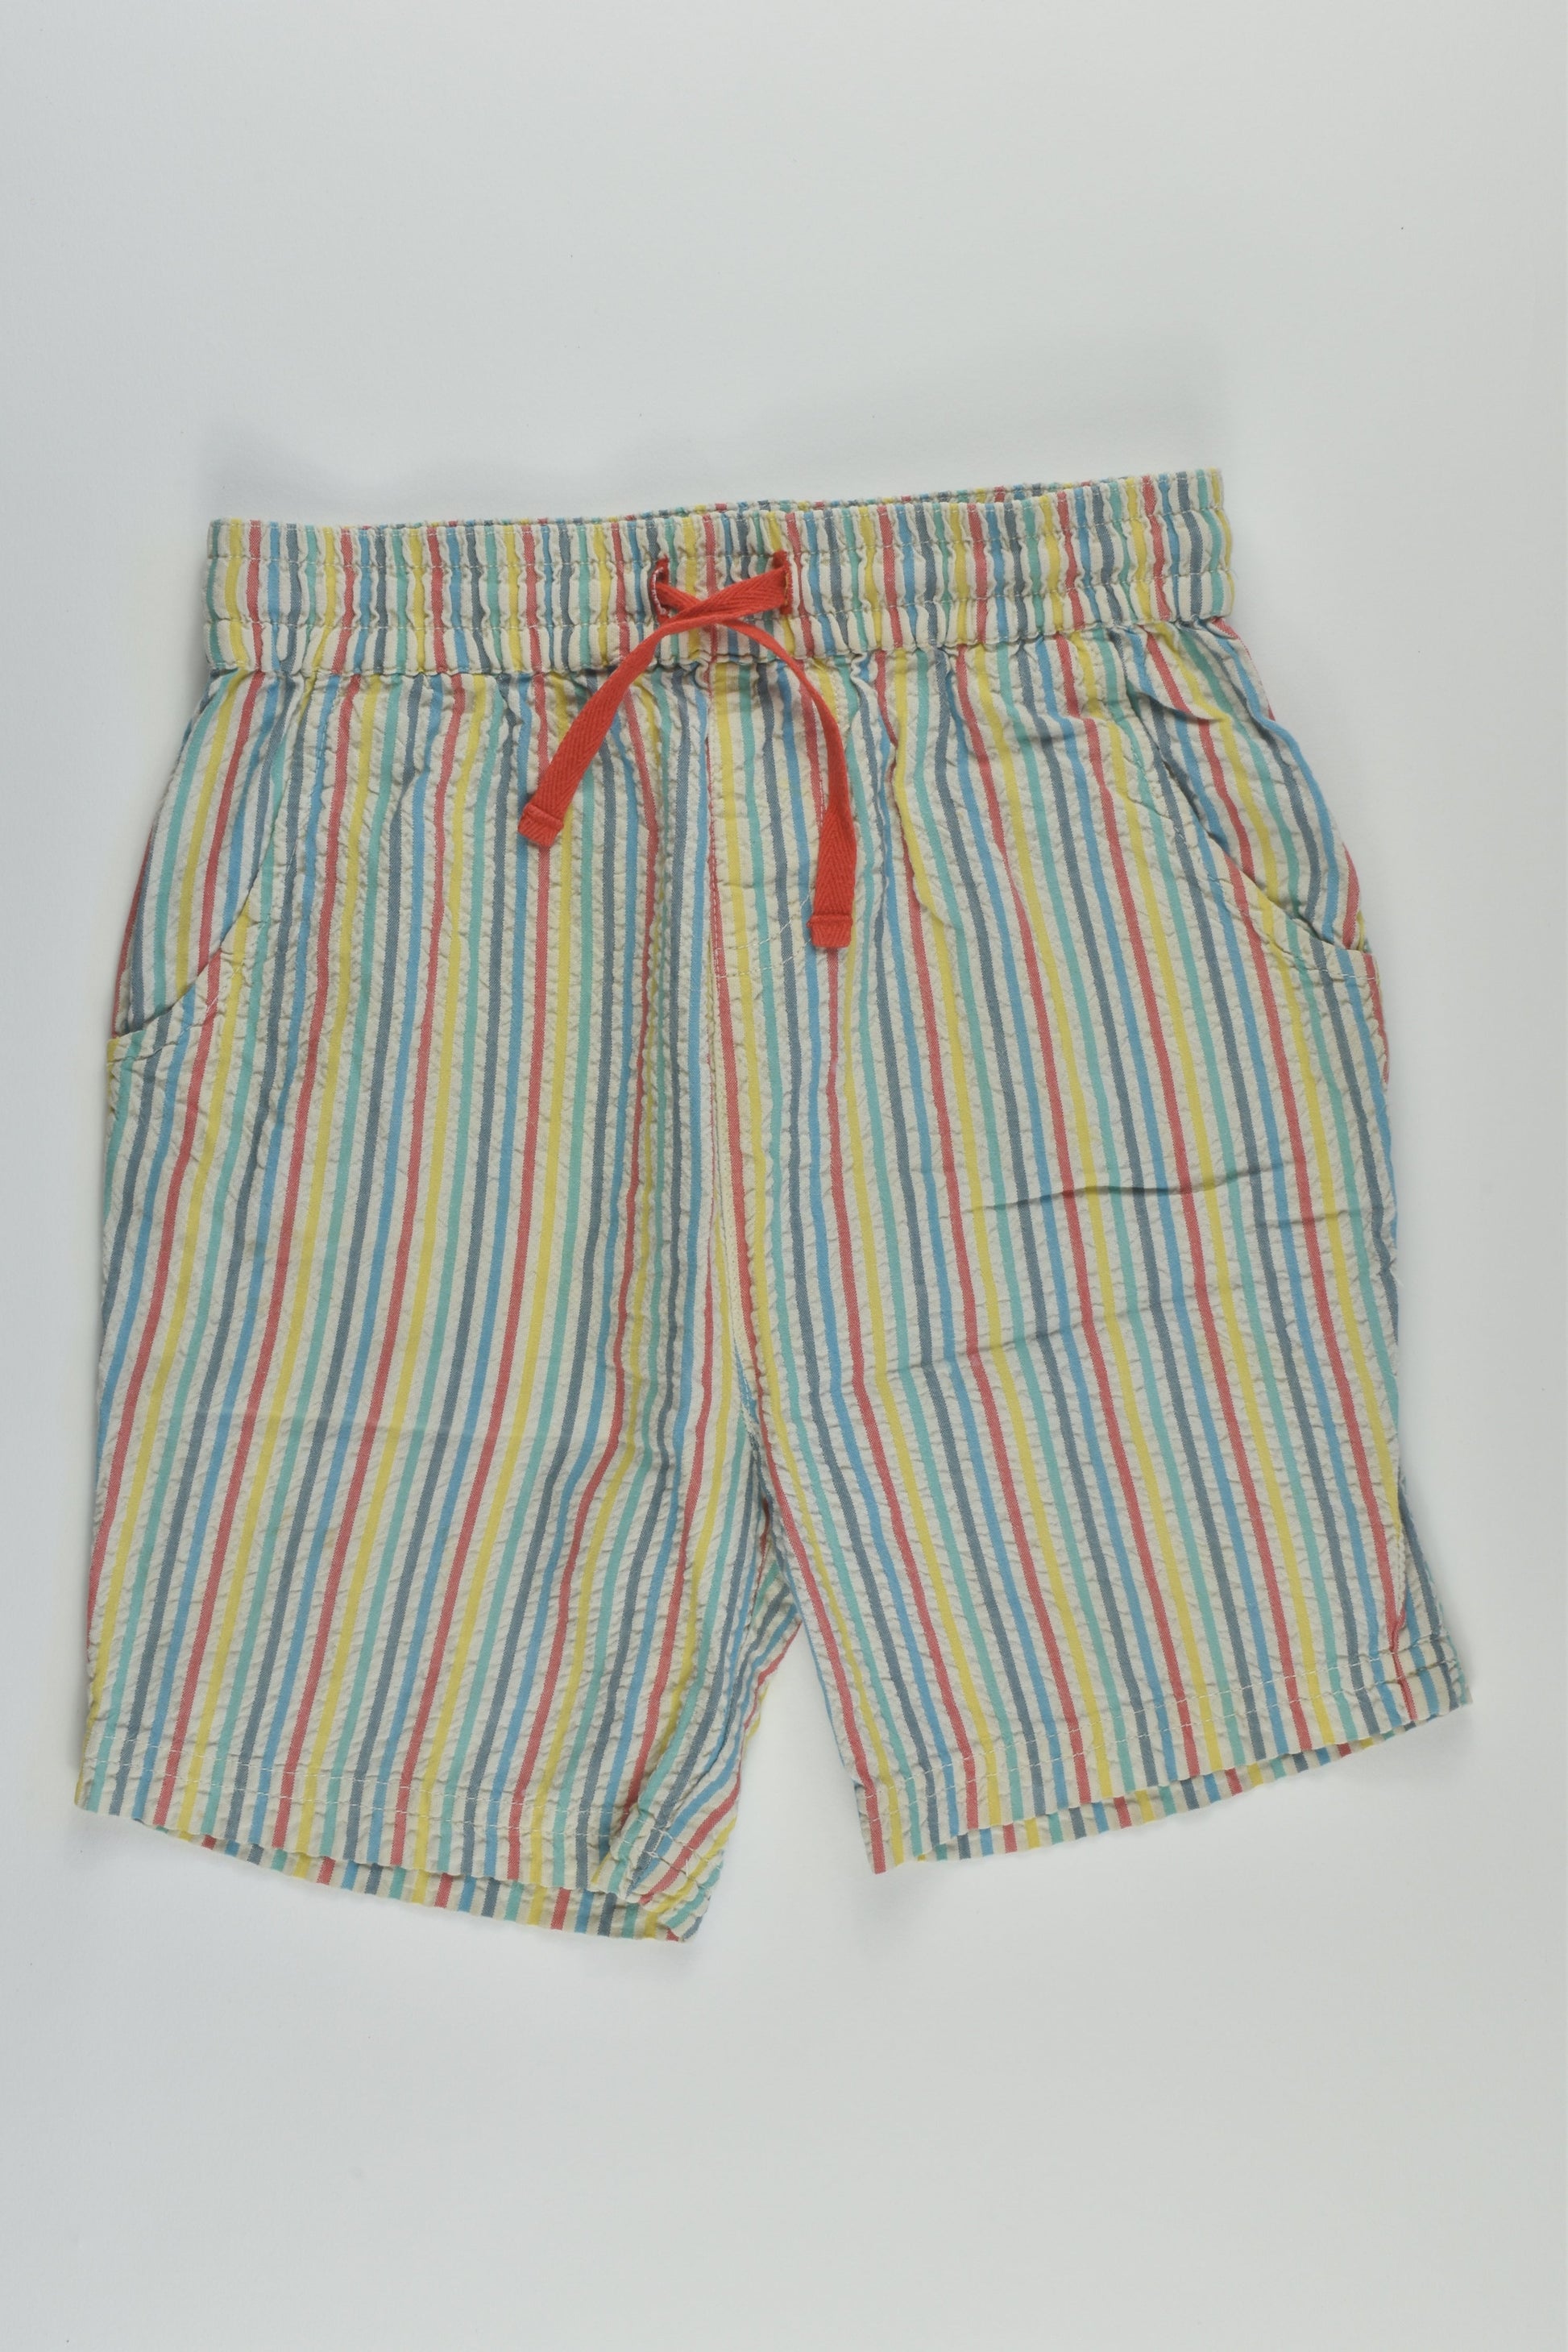 Frugi Size 3-4 Rainbow Stripes Shorts